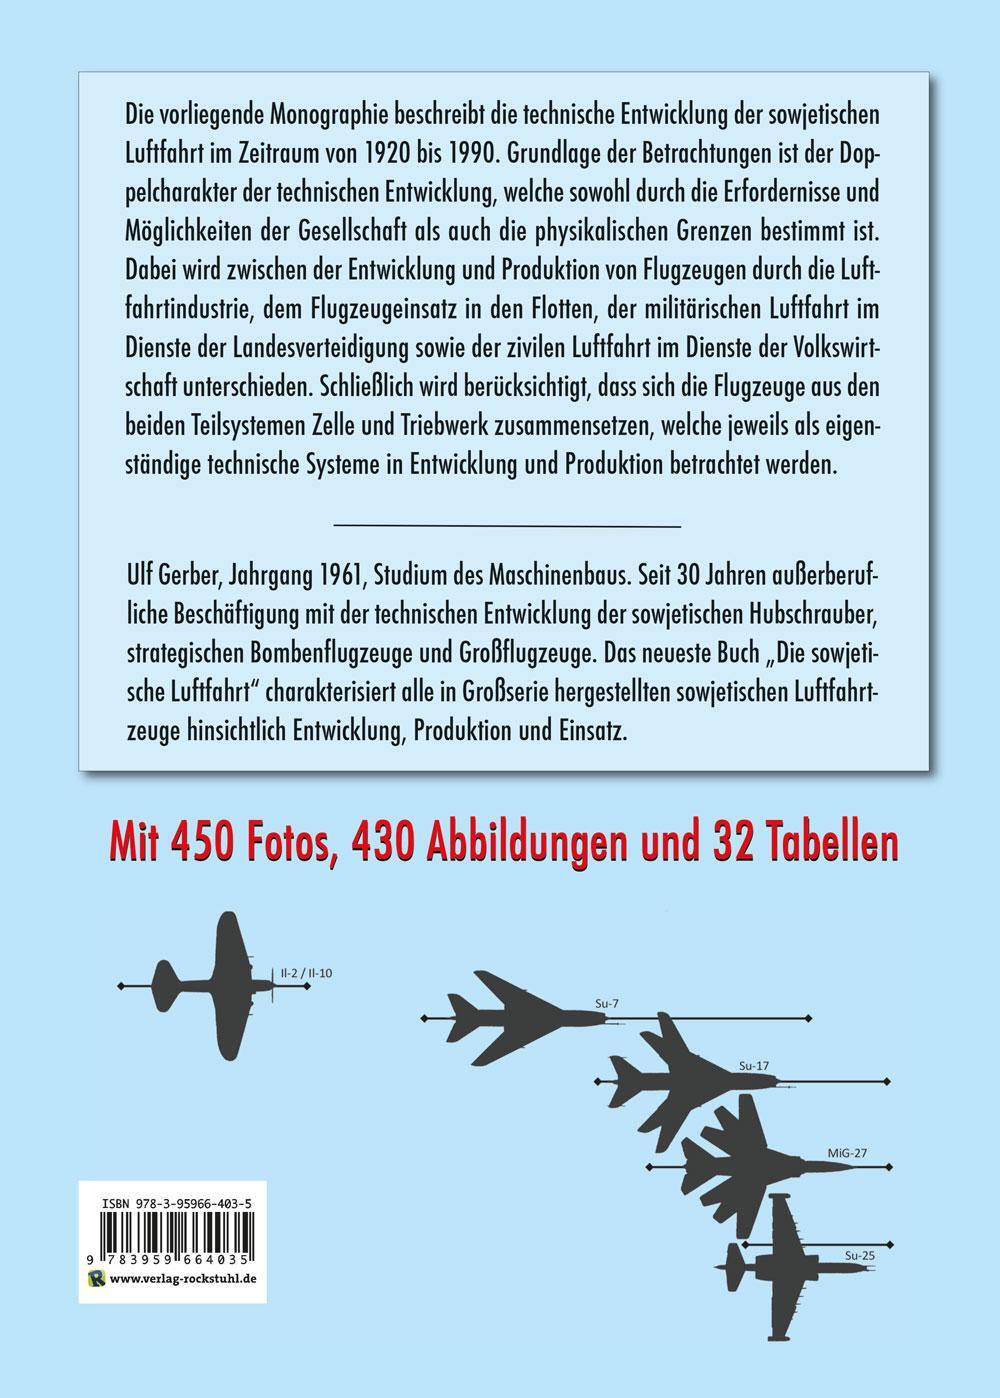 Rückseite: 9783959664035 | Das große Buch der sowjetischen Luftfahrt 1920-1990 | Gerber Ulf